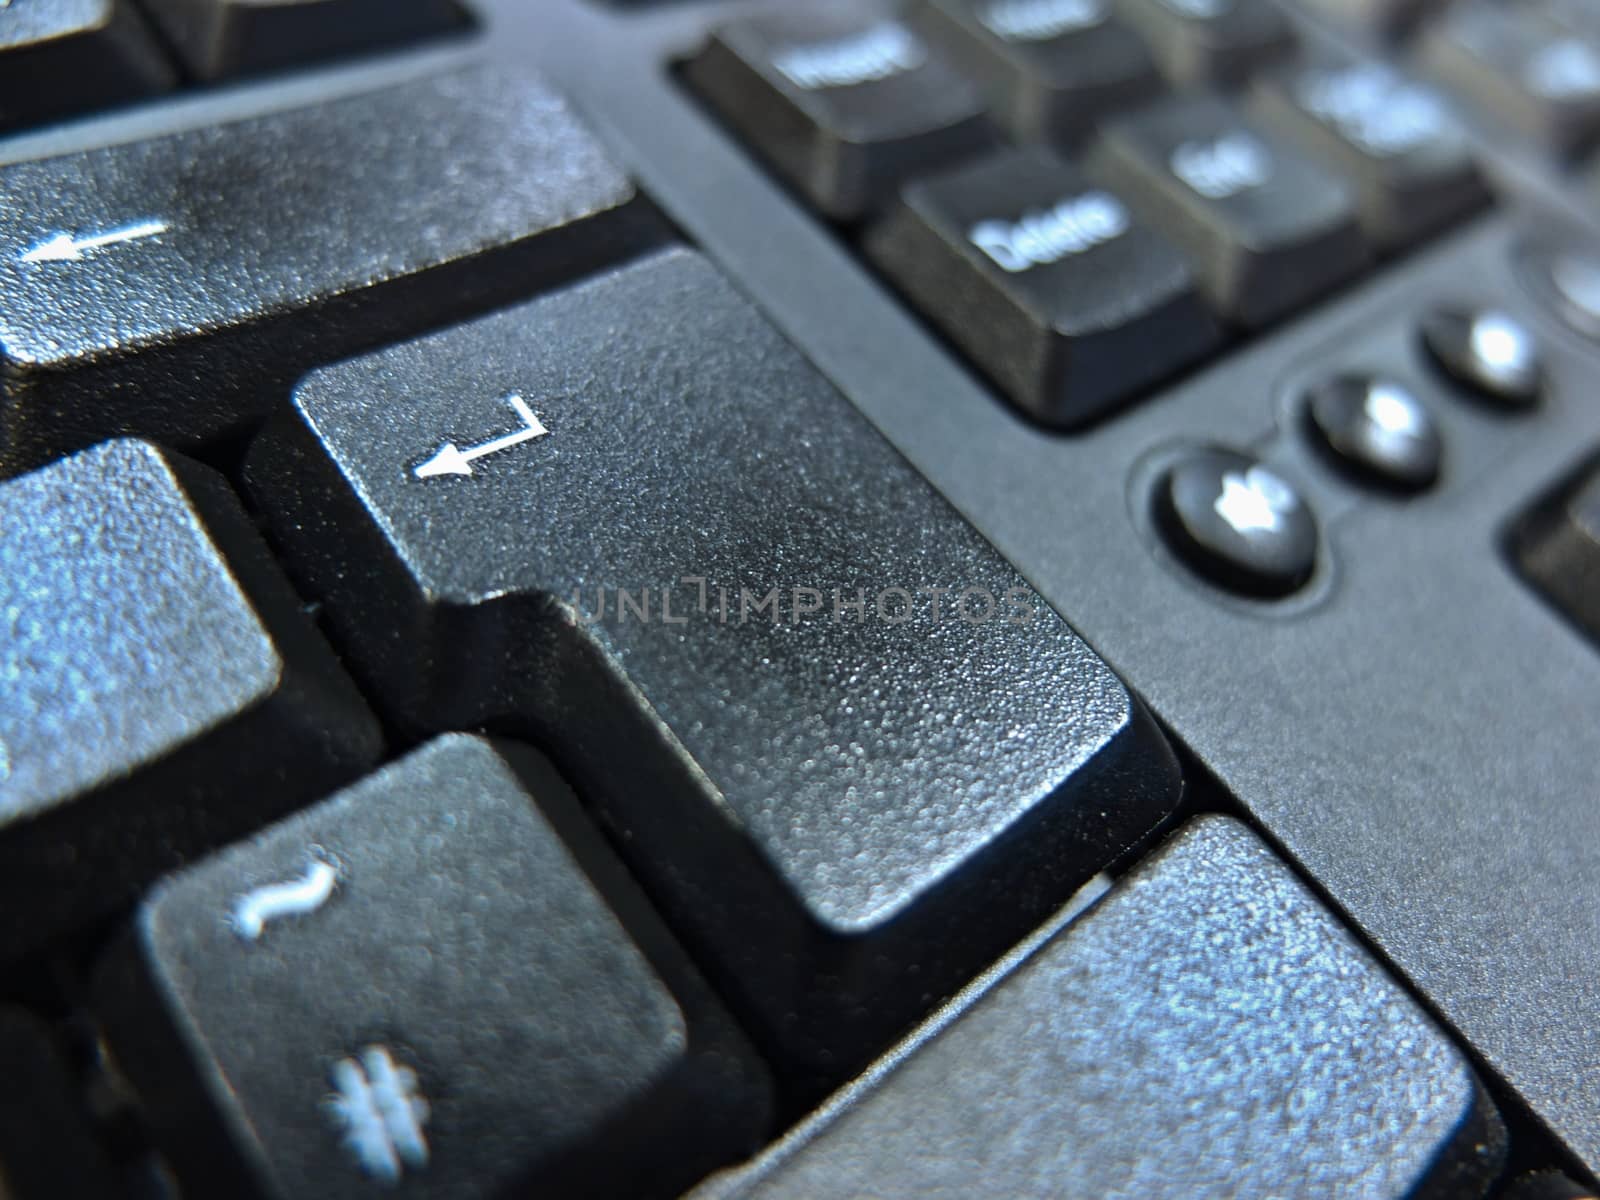 Enter Keyboard by antenacarnidlo